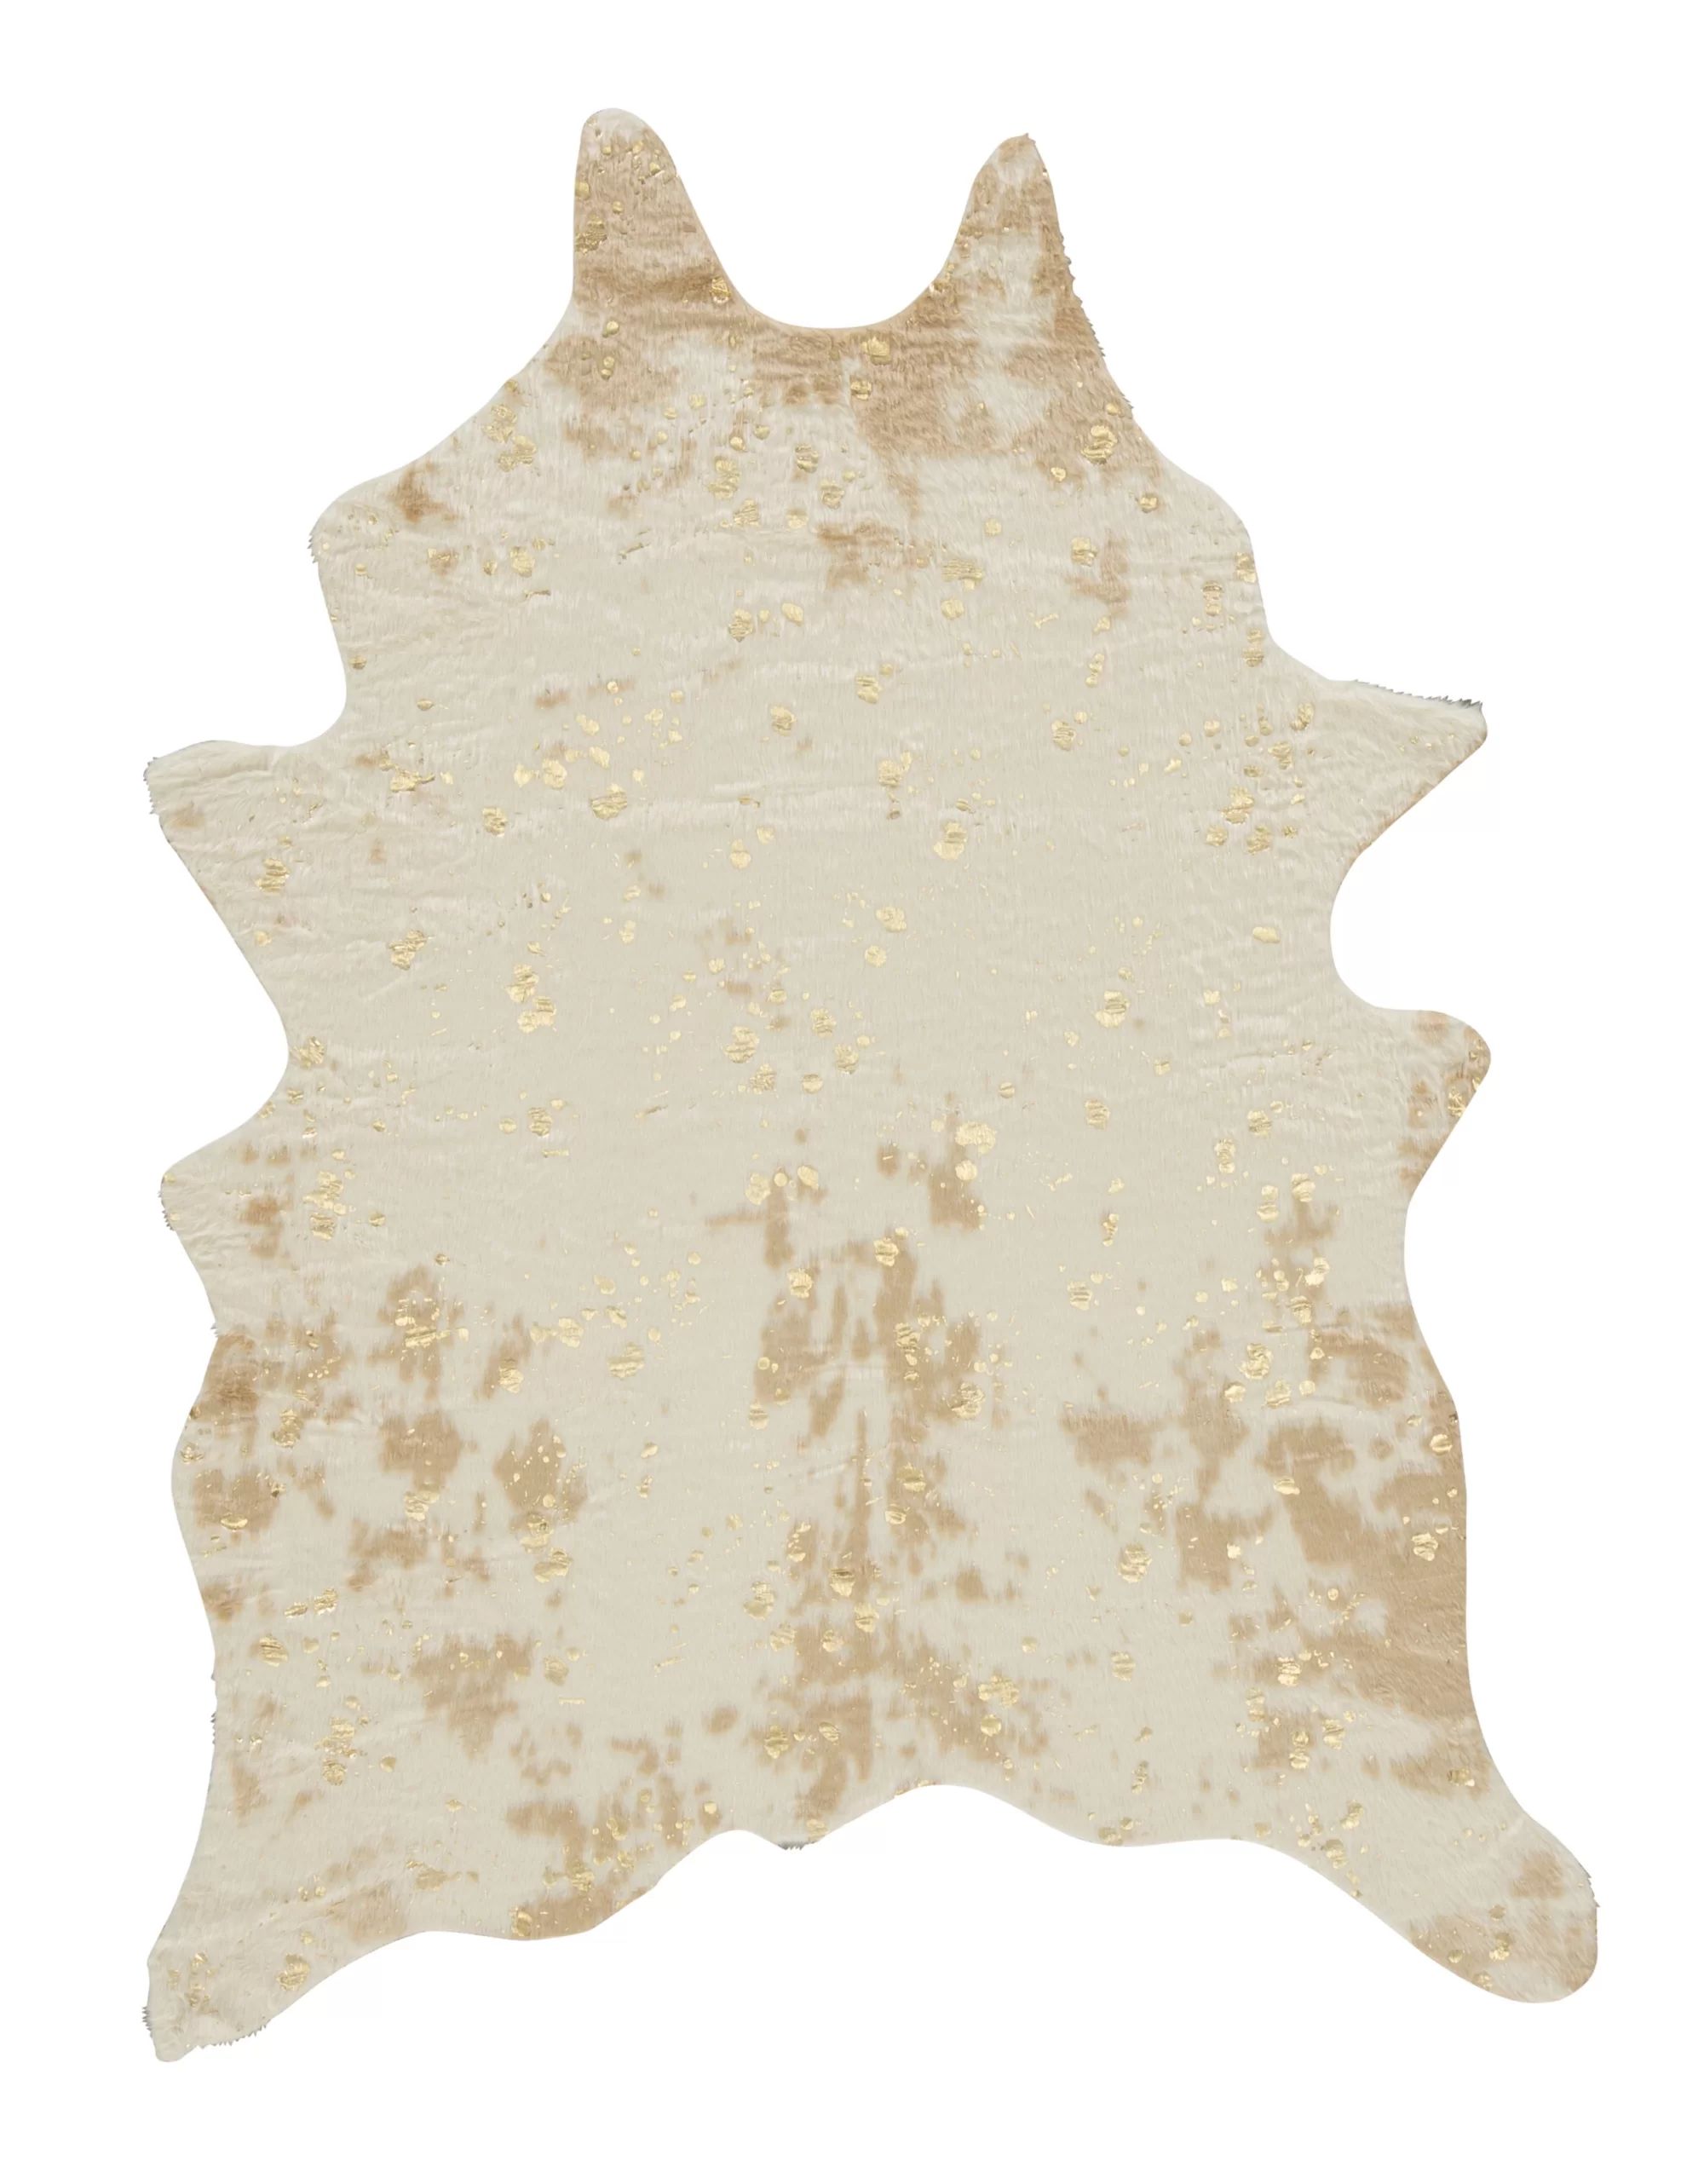 Pilla Animal Print Faux Cowhide Area Rug in Ivory/Brown | Wayfair North America